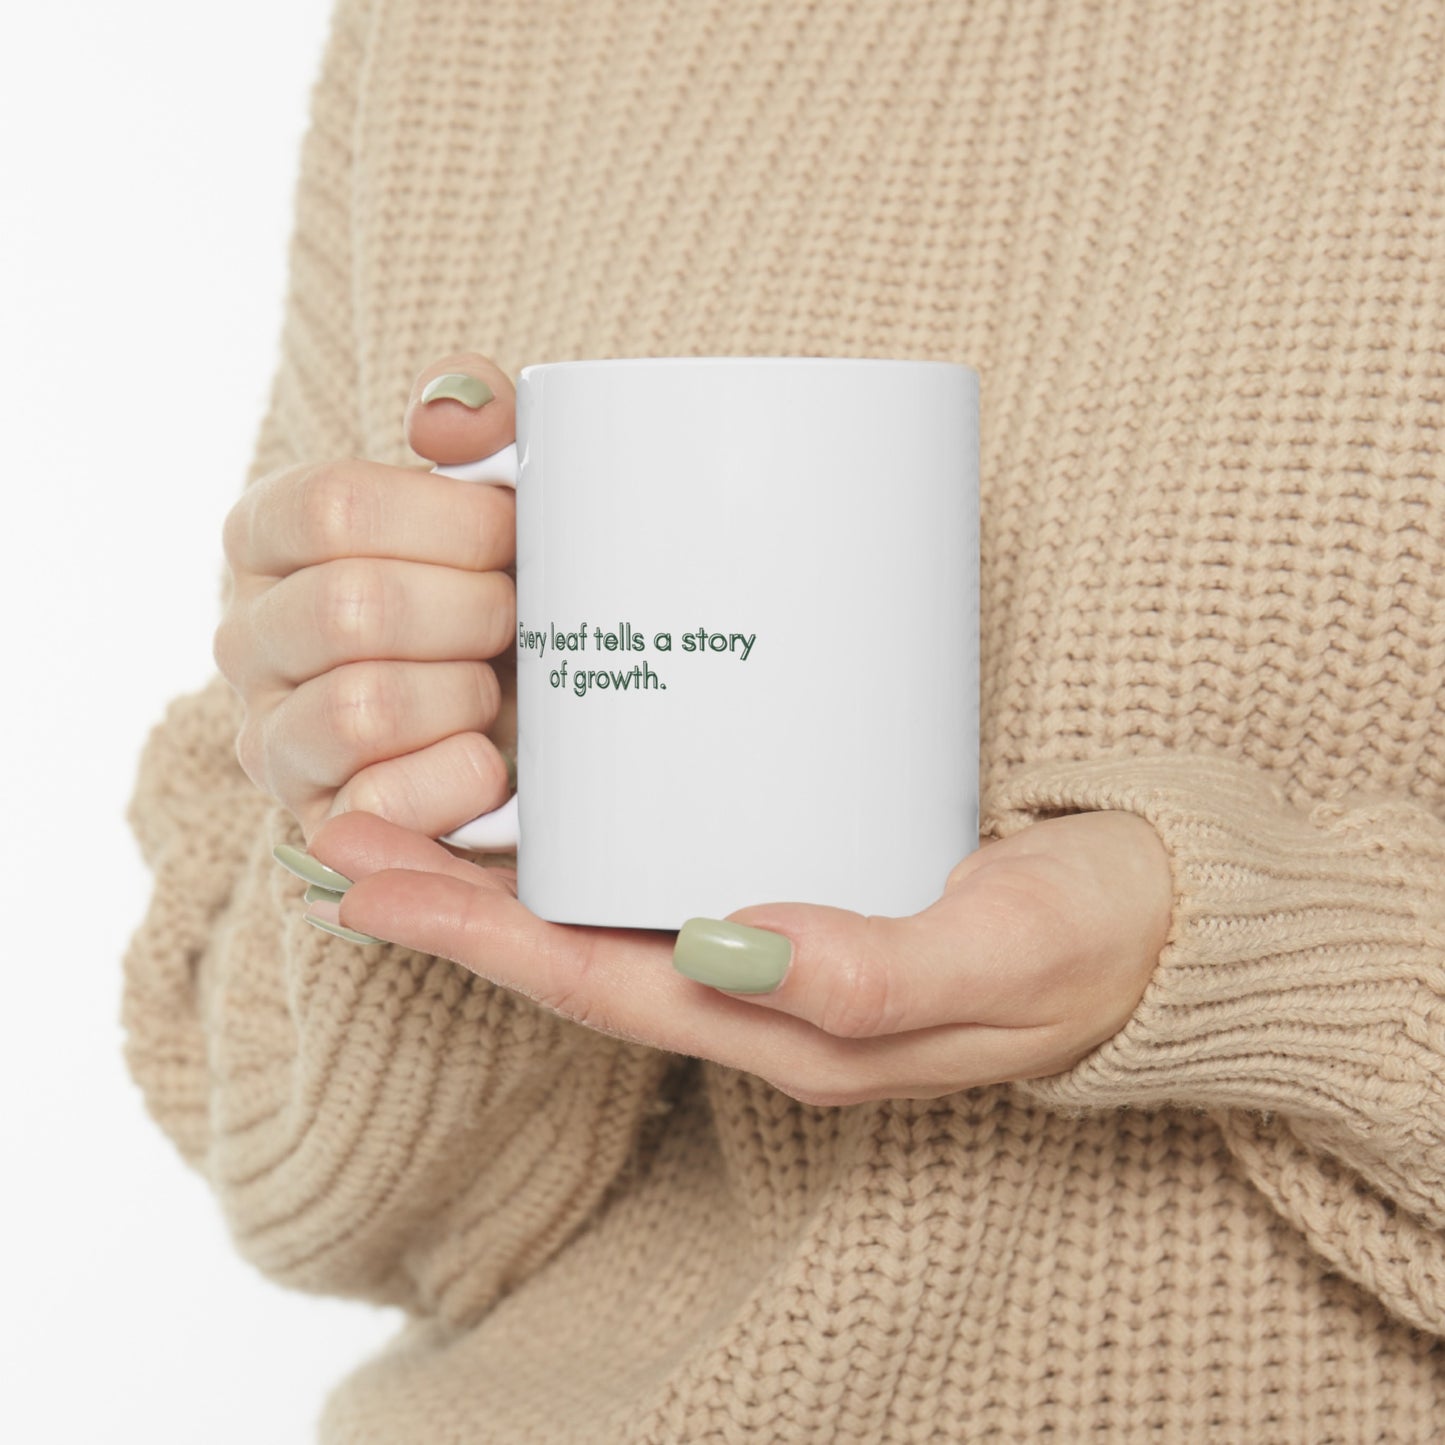 "Every leaf tells a story of growth." | Coffee Mug